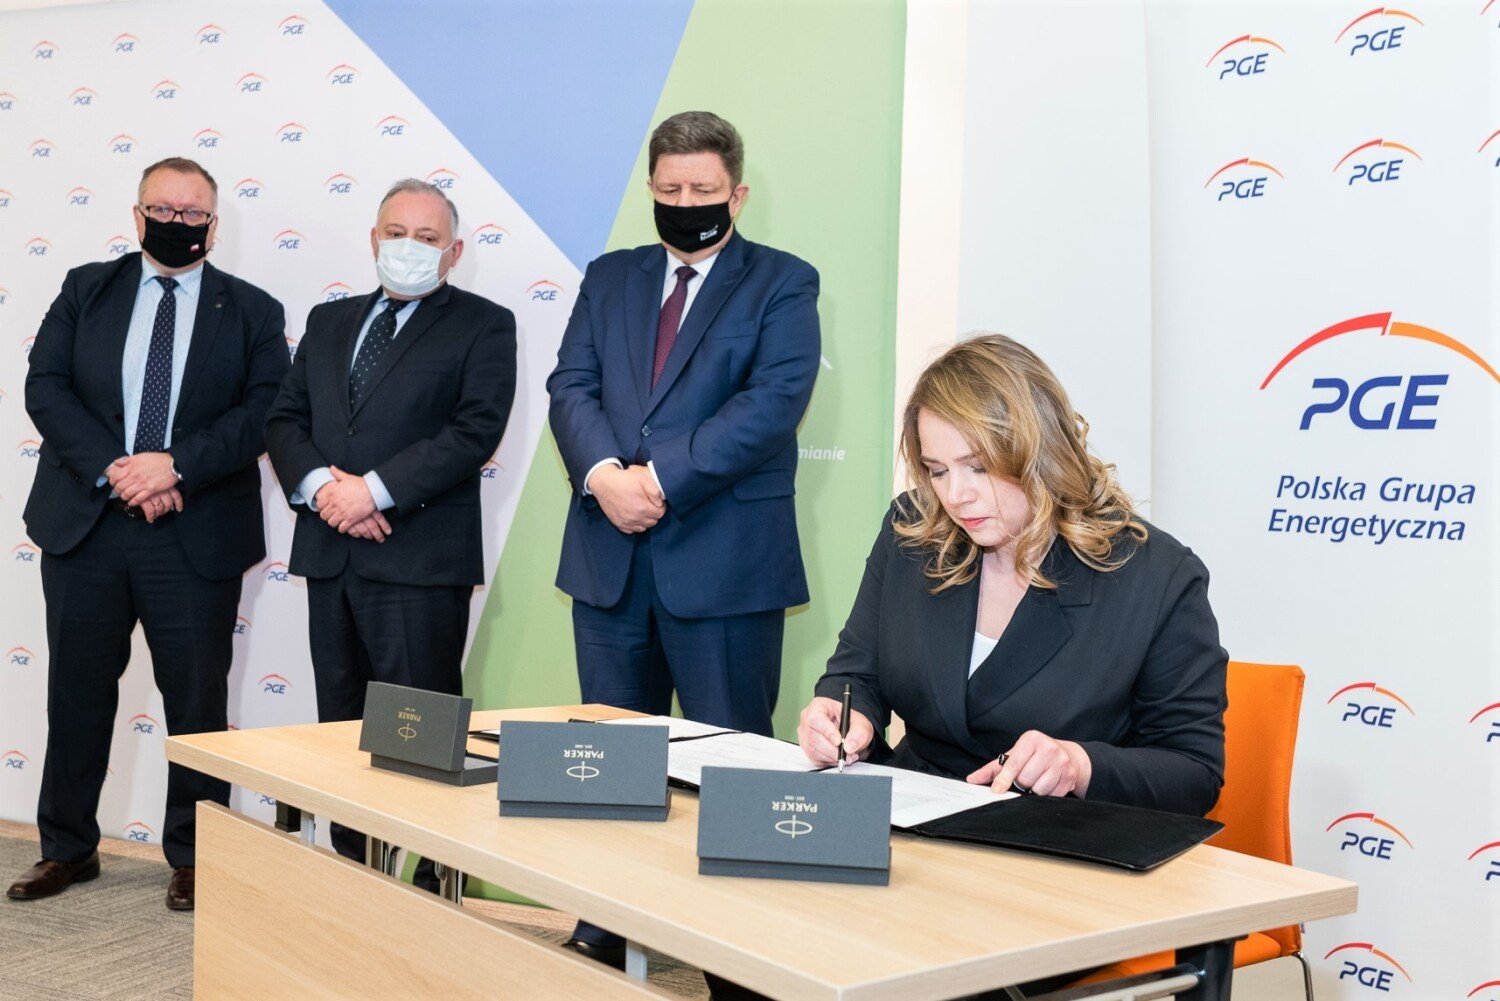 PGE i PKP mają zainwestować w Karsznicach. Nowy pomysł to Konsorcjum  Transportu Kombinowanego | Zduńska Wola Nasze Miasto